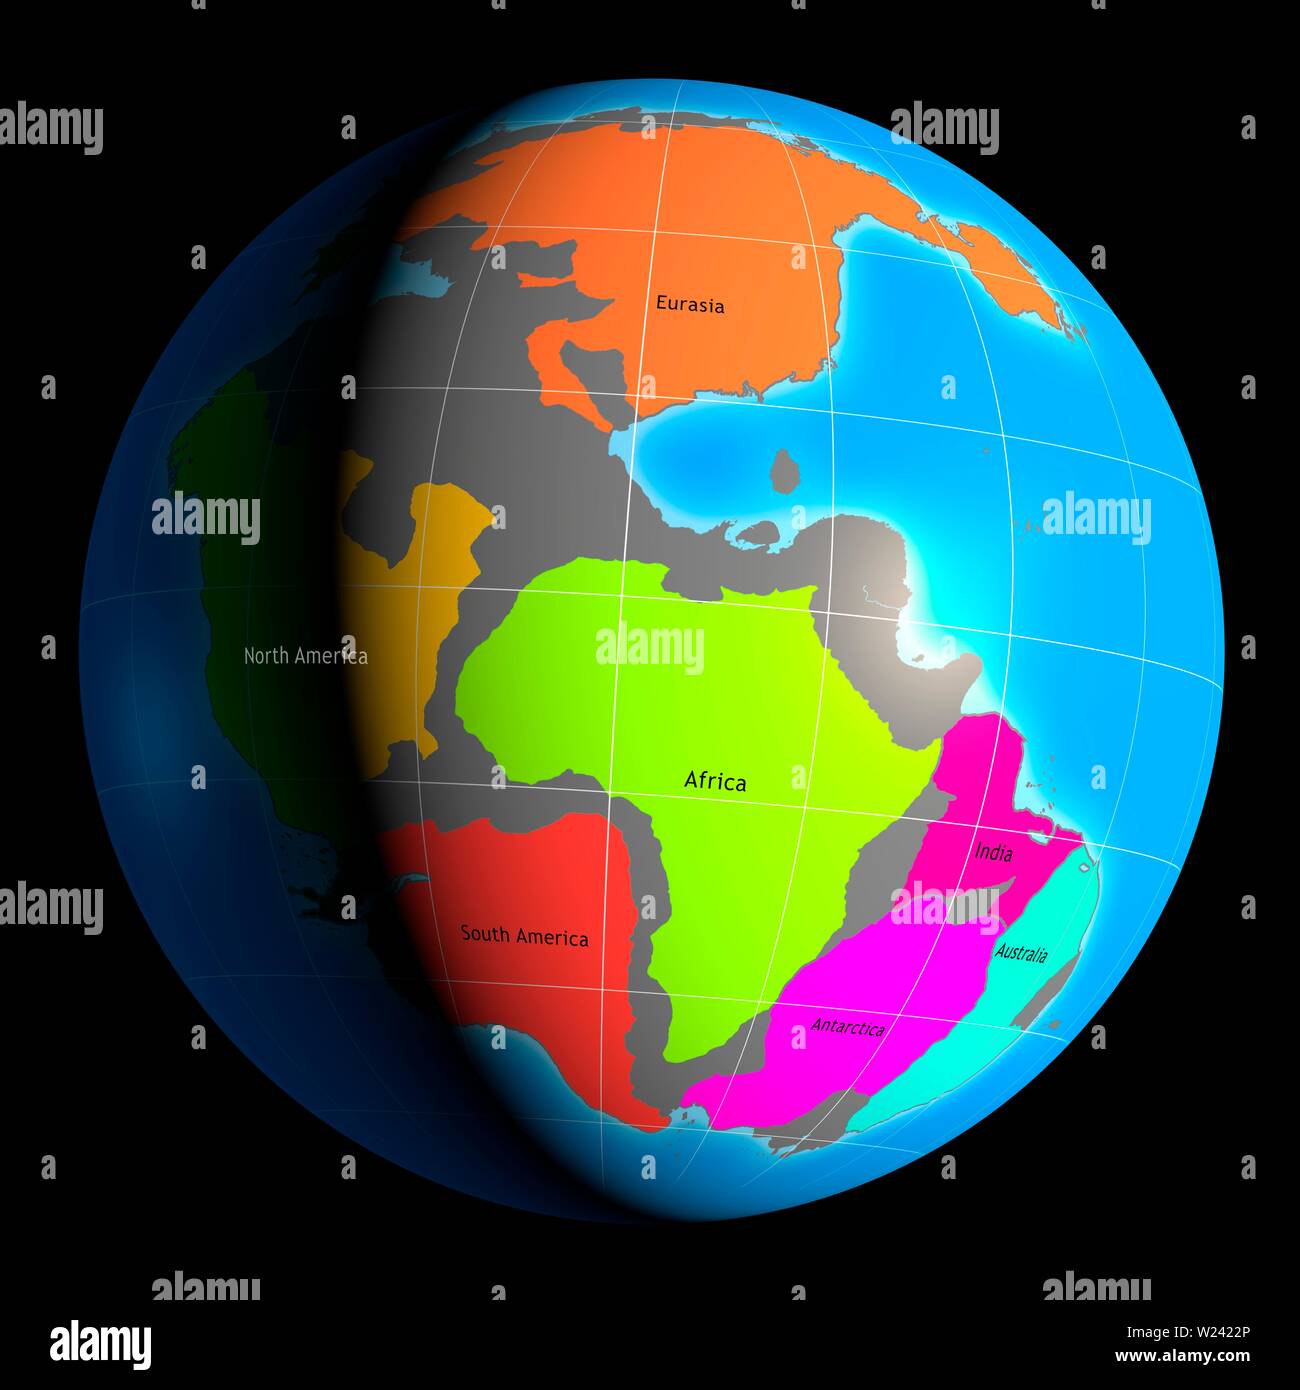 Darstellung der Welt, wenn es in einem einzigen riesigen Kontinent, bekannt als Pangaea bedeckt war. Einige der bekannteren Landmassen und Kontinente sind s Stockfoto